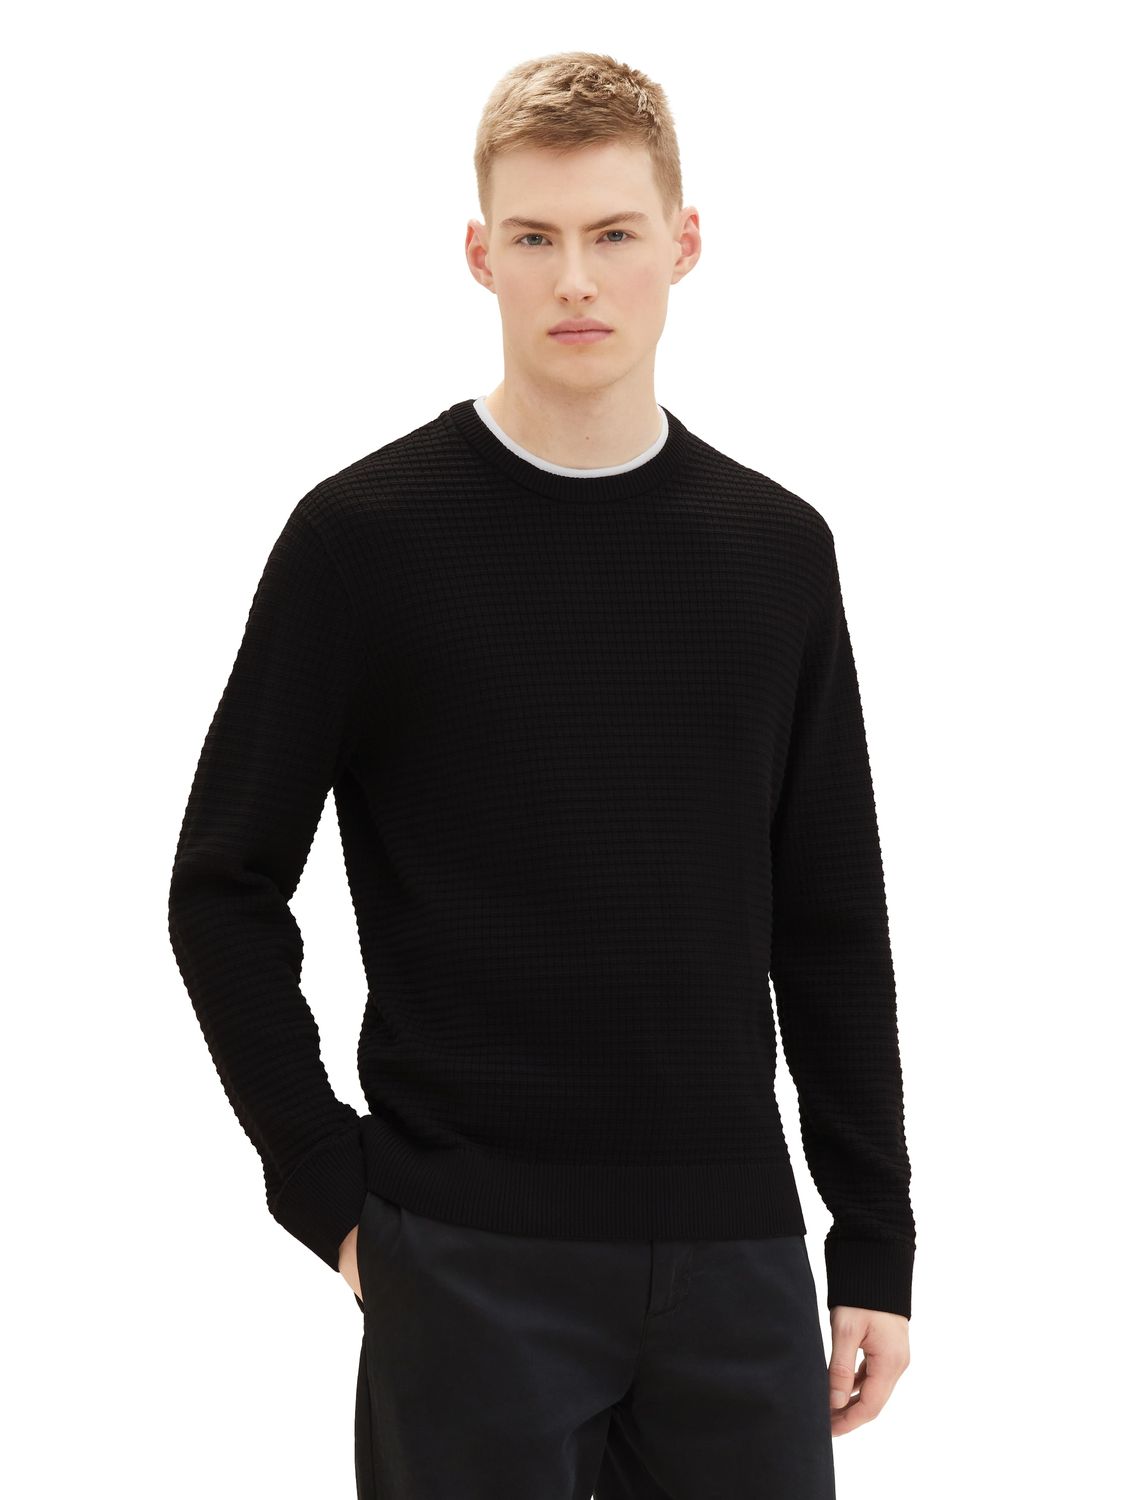 Пуловер TOM TAILOR Denim STRUCTURED DOUBLELAYER, черный пуловер tom tailor denim structured doublelayer серый